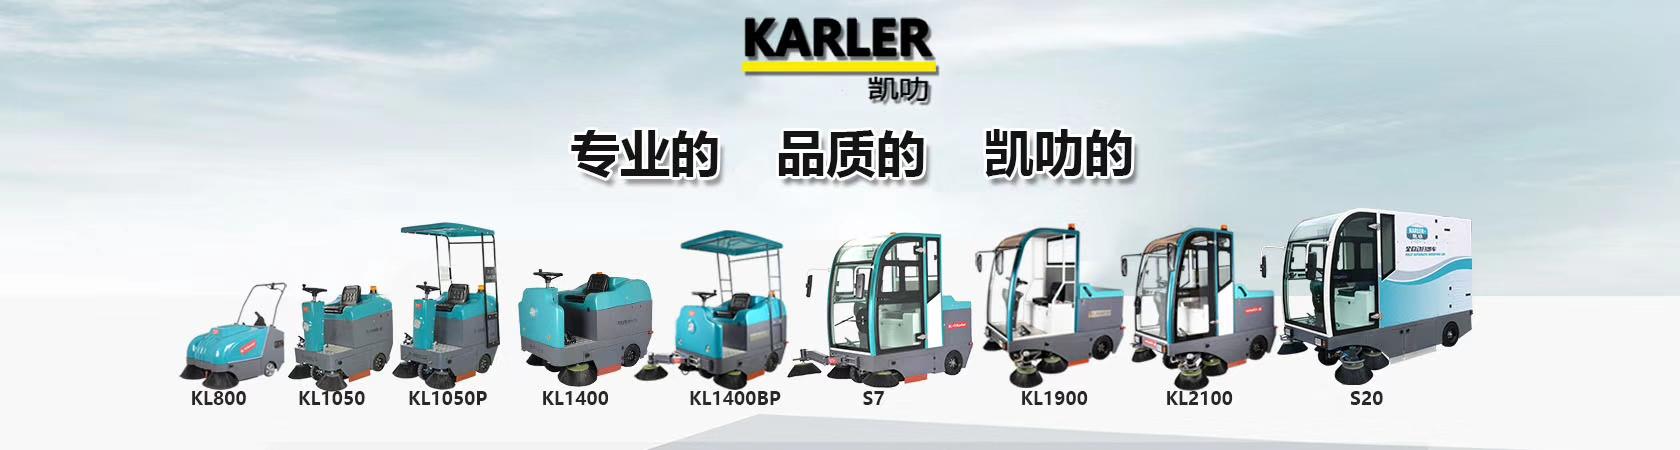 凯叻双刷驾驶式洗地机KL860  工厂物业学校超市车站保洁洗地机示例图18